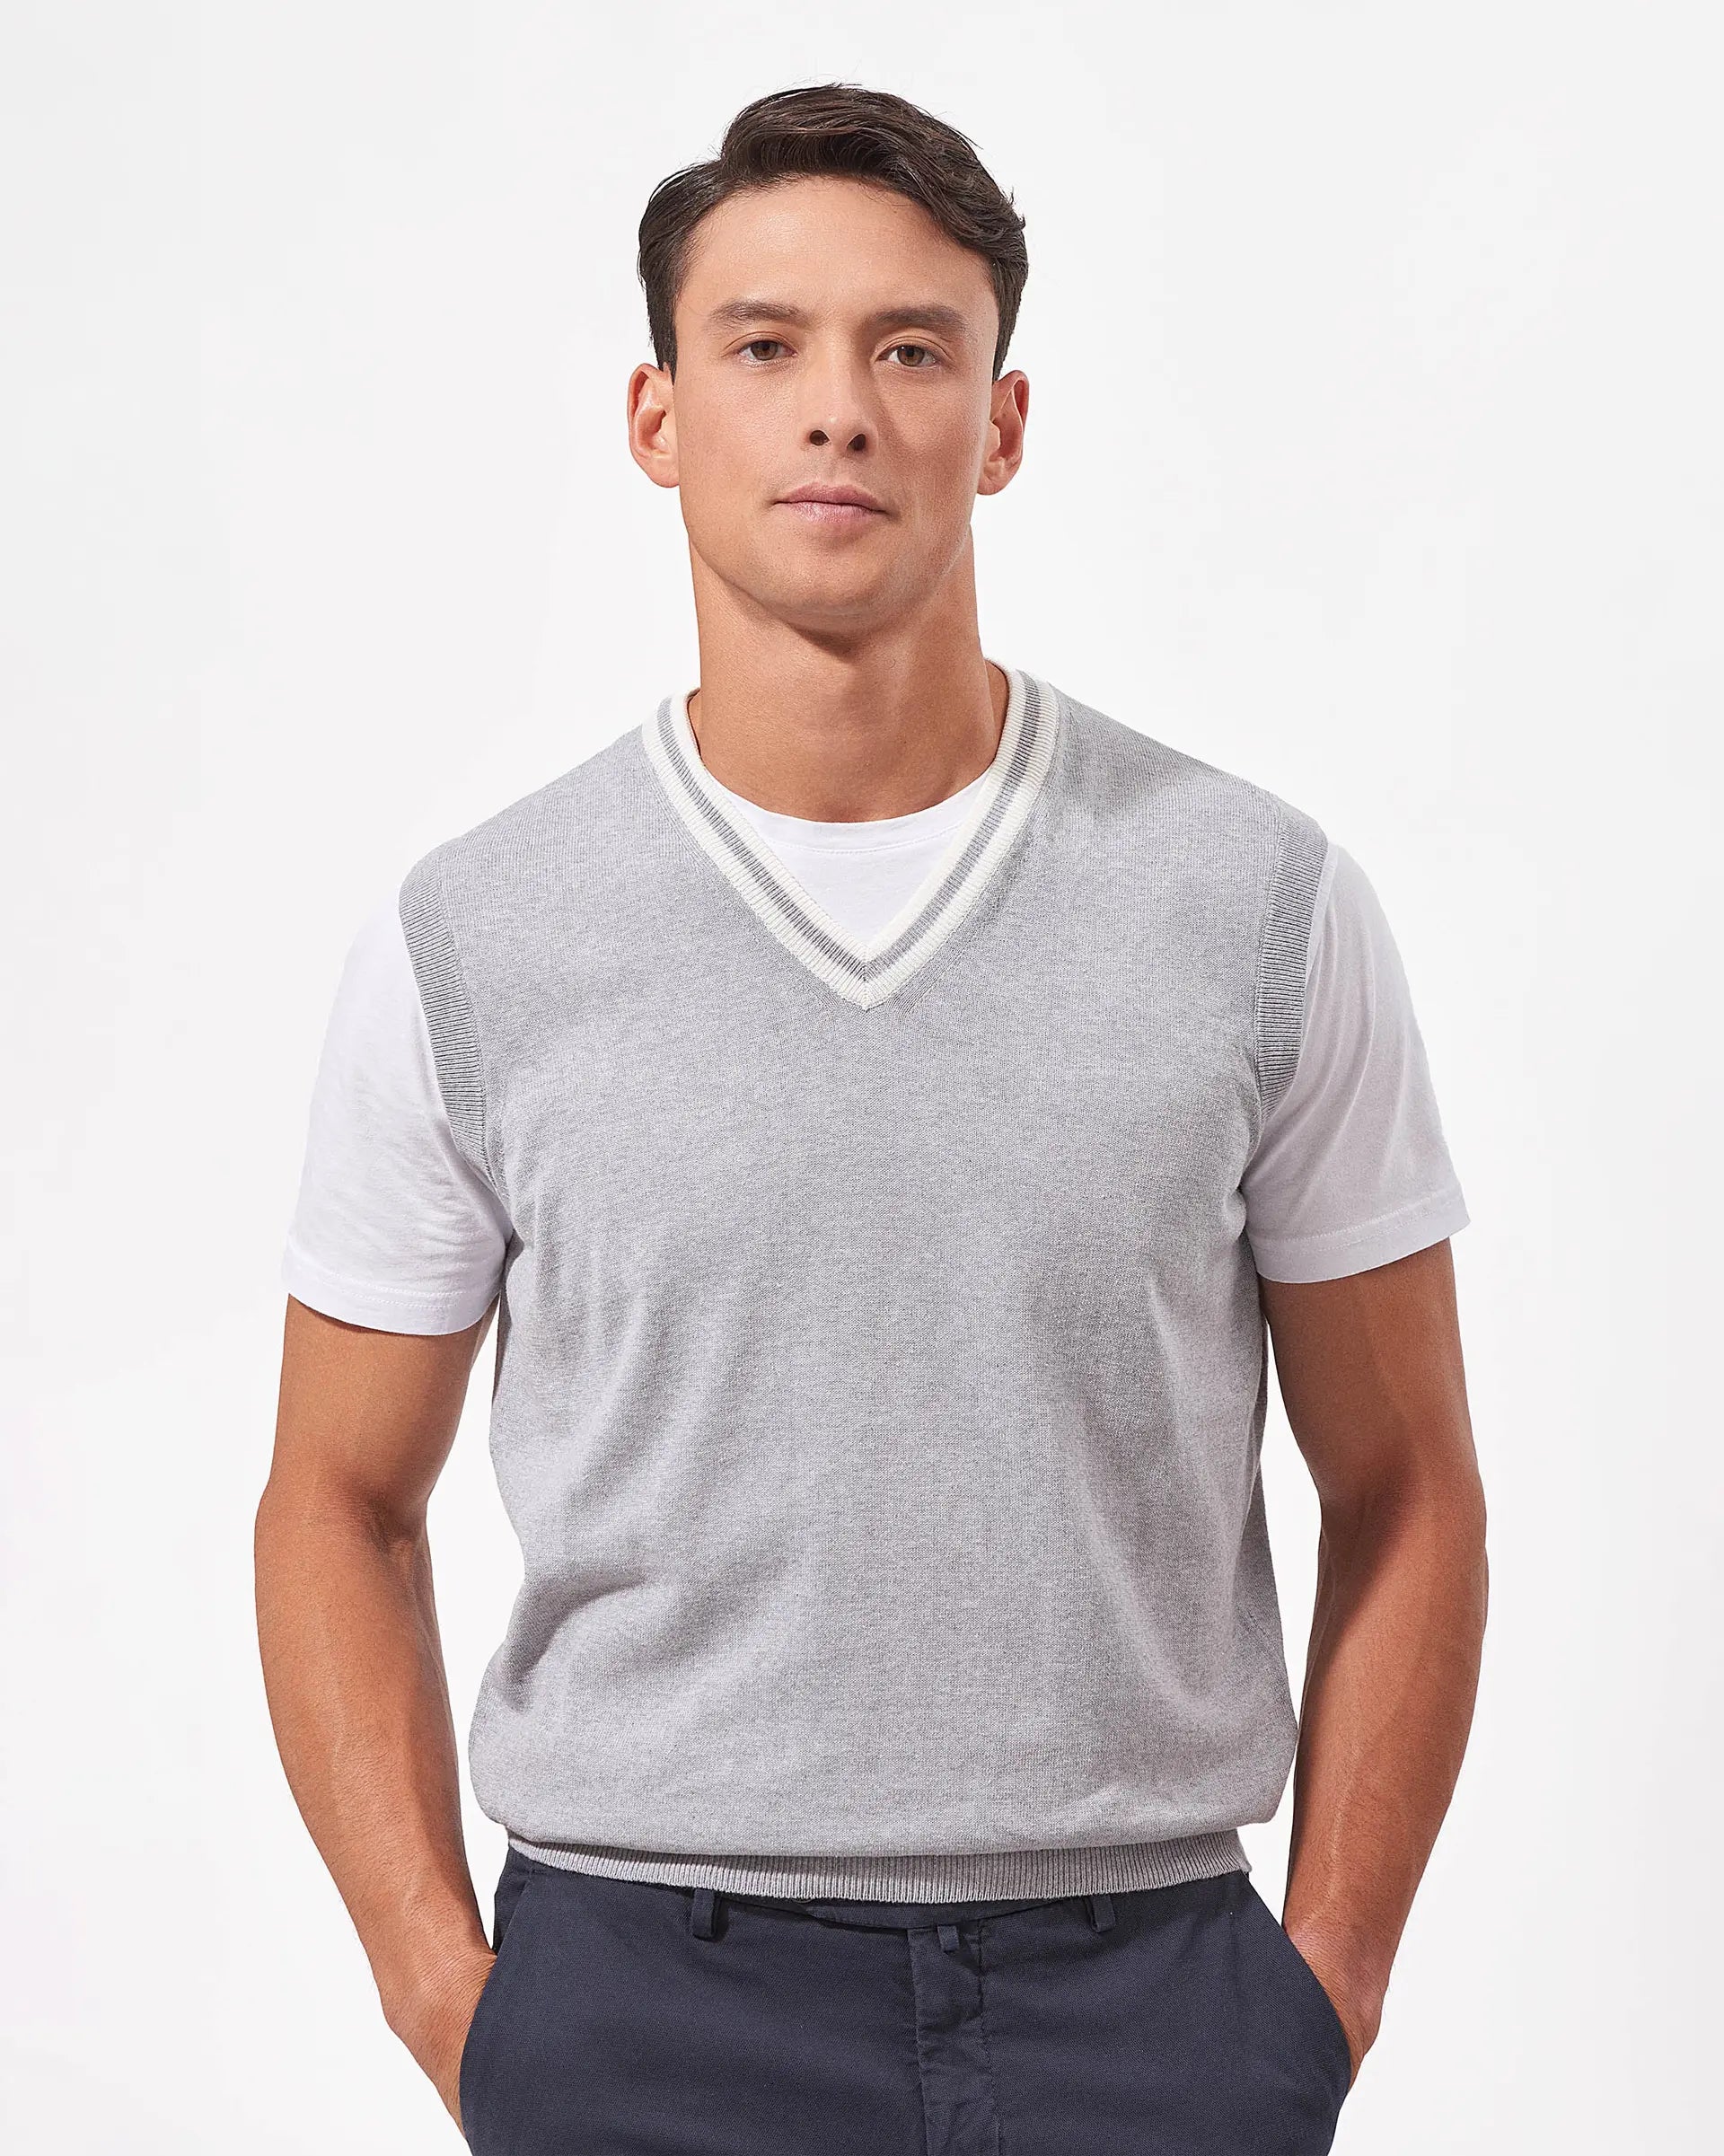 Grey cotton v-neck sweater vest - 12 gauge